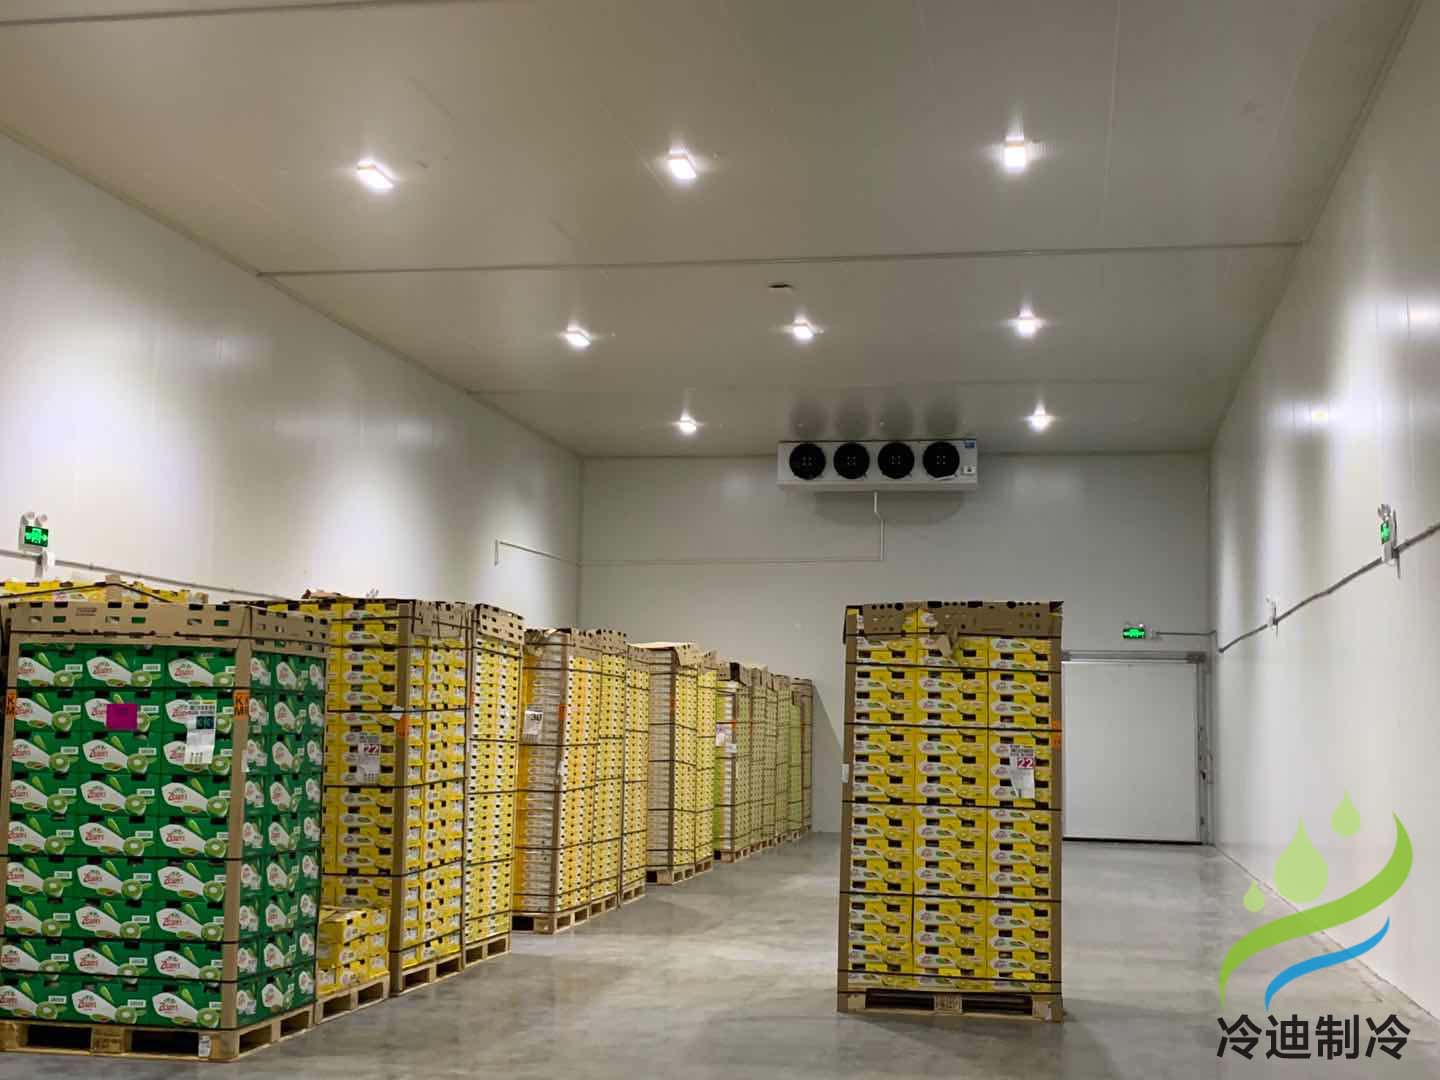 上海天天果園7320m3大型食品電商冷庫工程及舊庫檢修項目